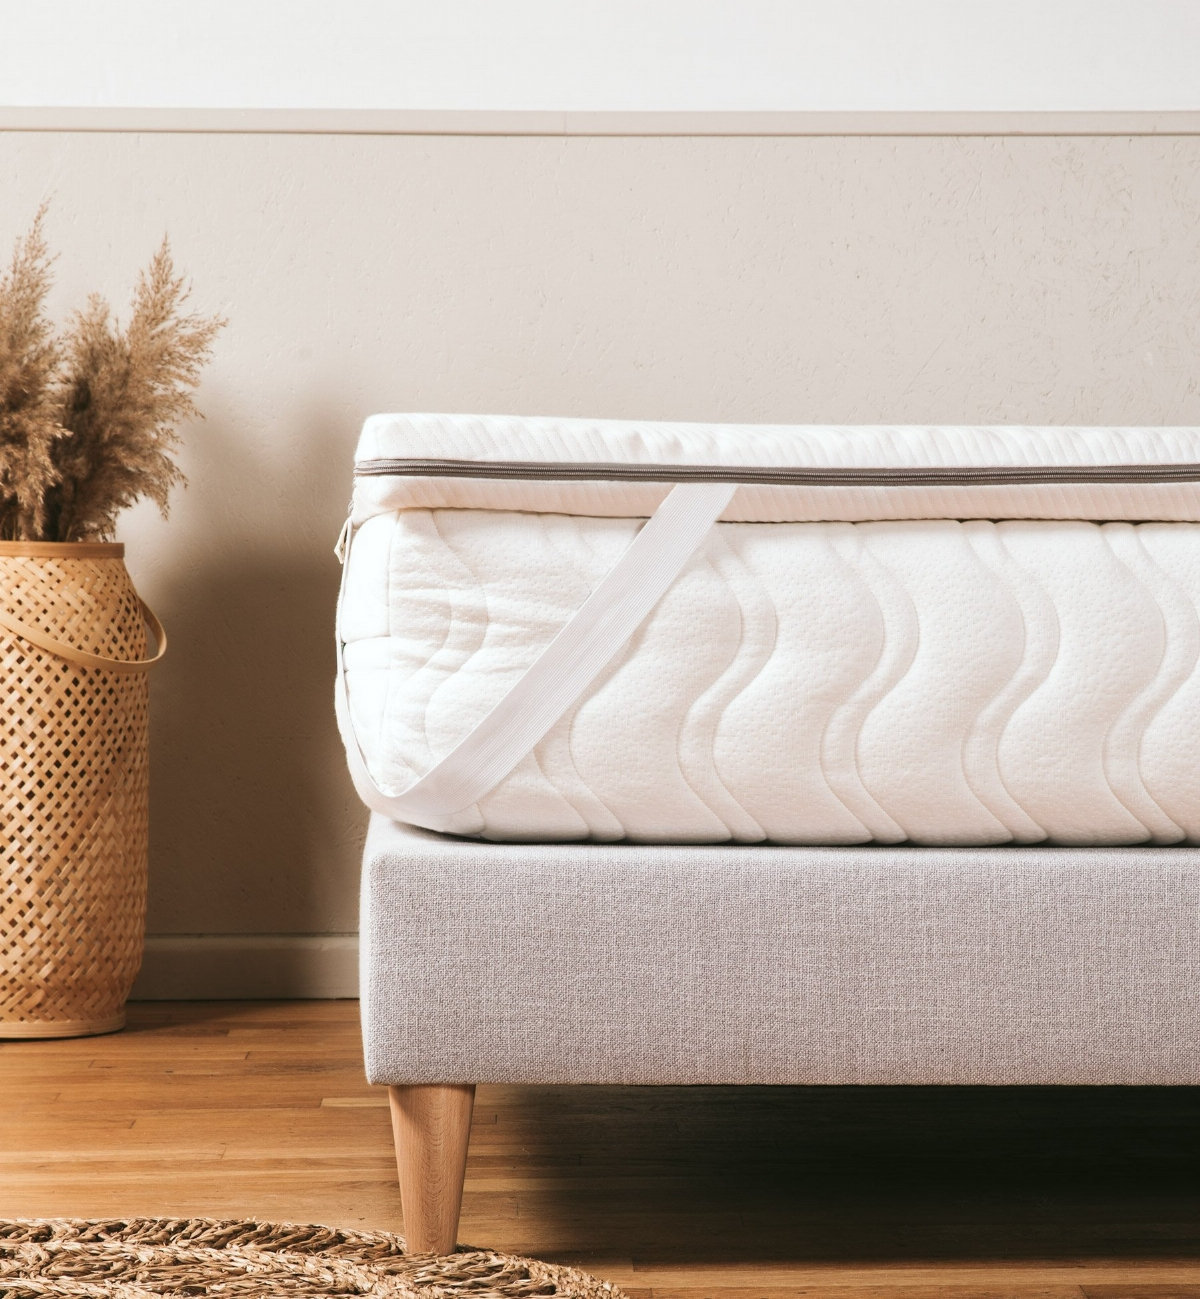 Capa de colchão em látex natural para camas de casal, uma solução ideal para aumentar o conforto do seu colchão